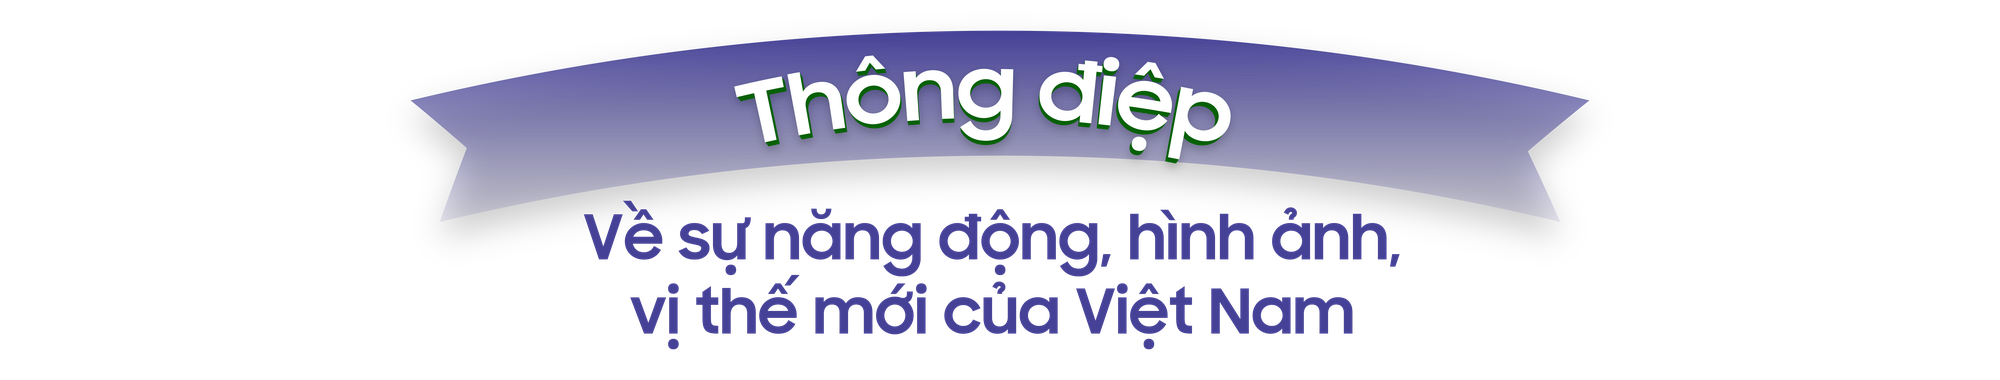 Vị thế, hình ảnh Việt Nam với cơ đồ, tiềm lực, tầm vóc và uy tín mới- Ảnh 6.